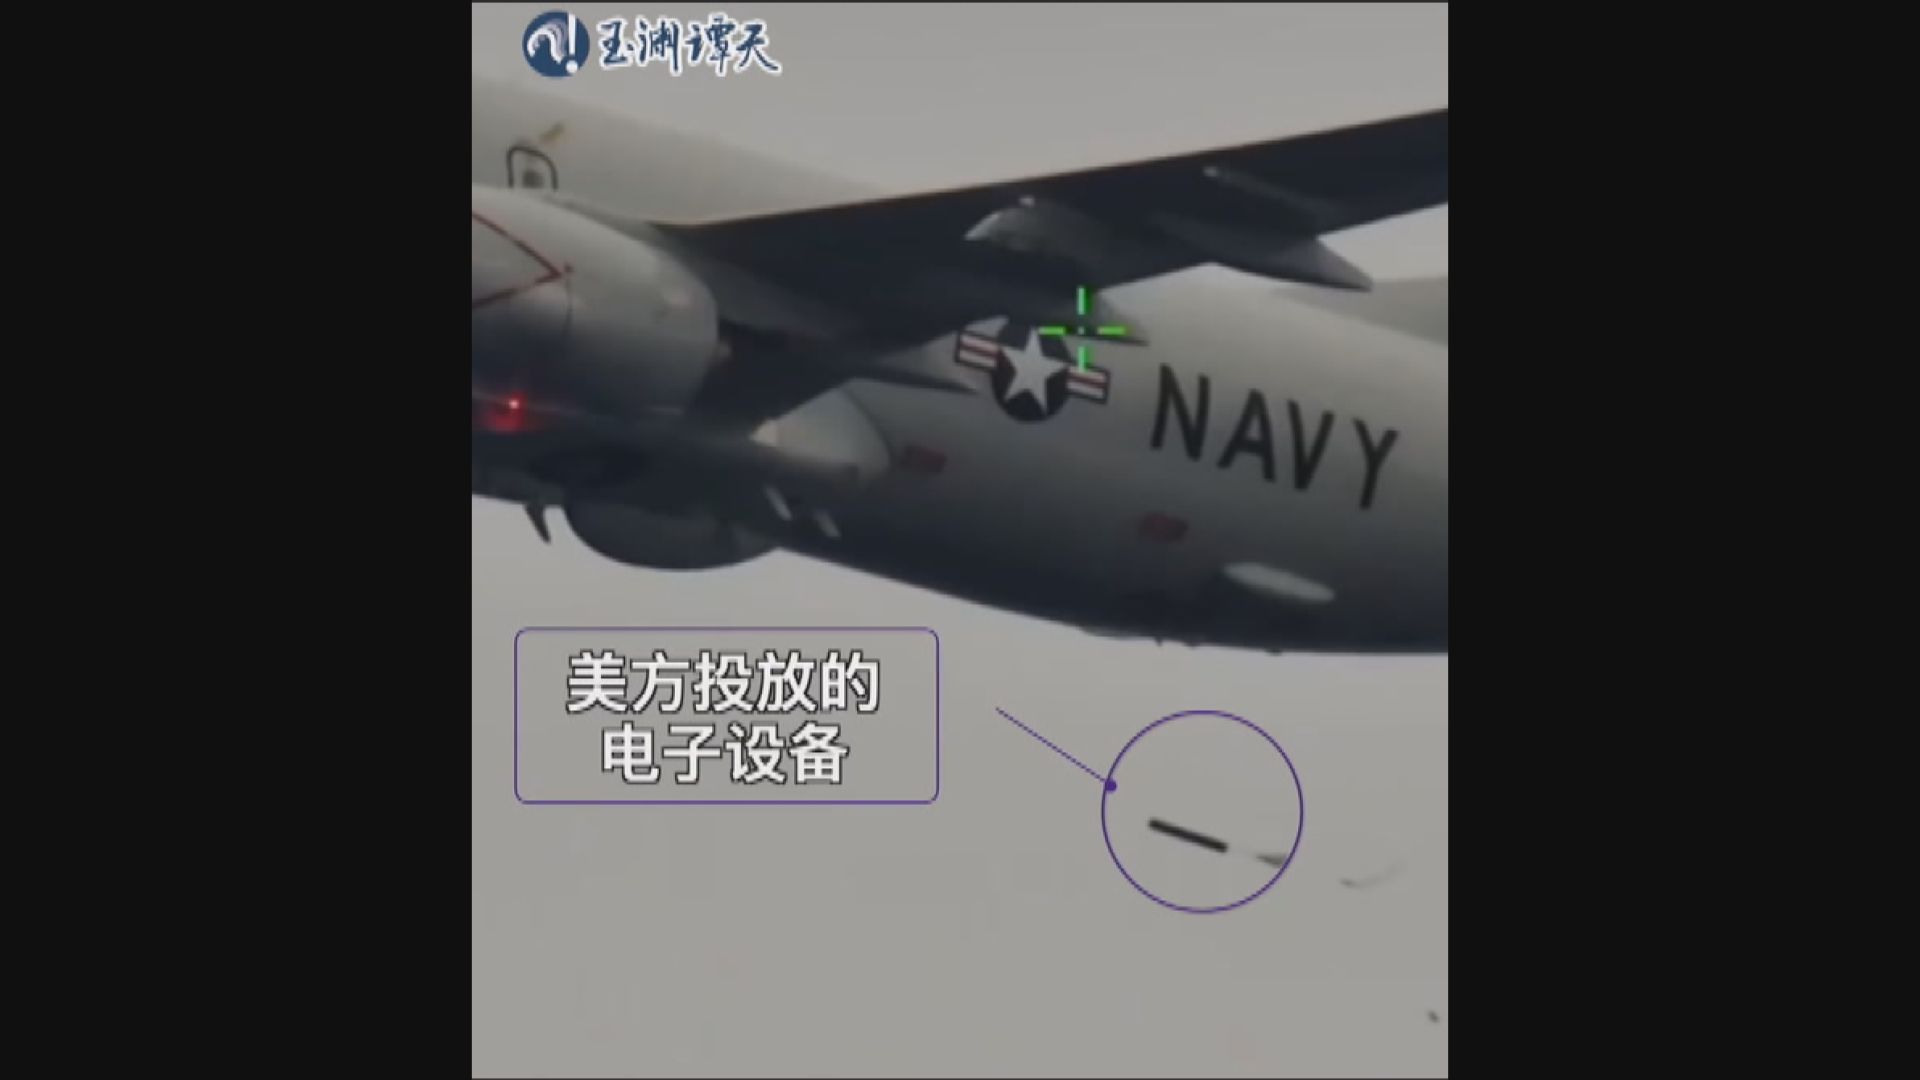 中國海警在南海截獲美軍軍機投下的潛艇探測器